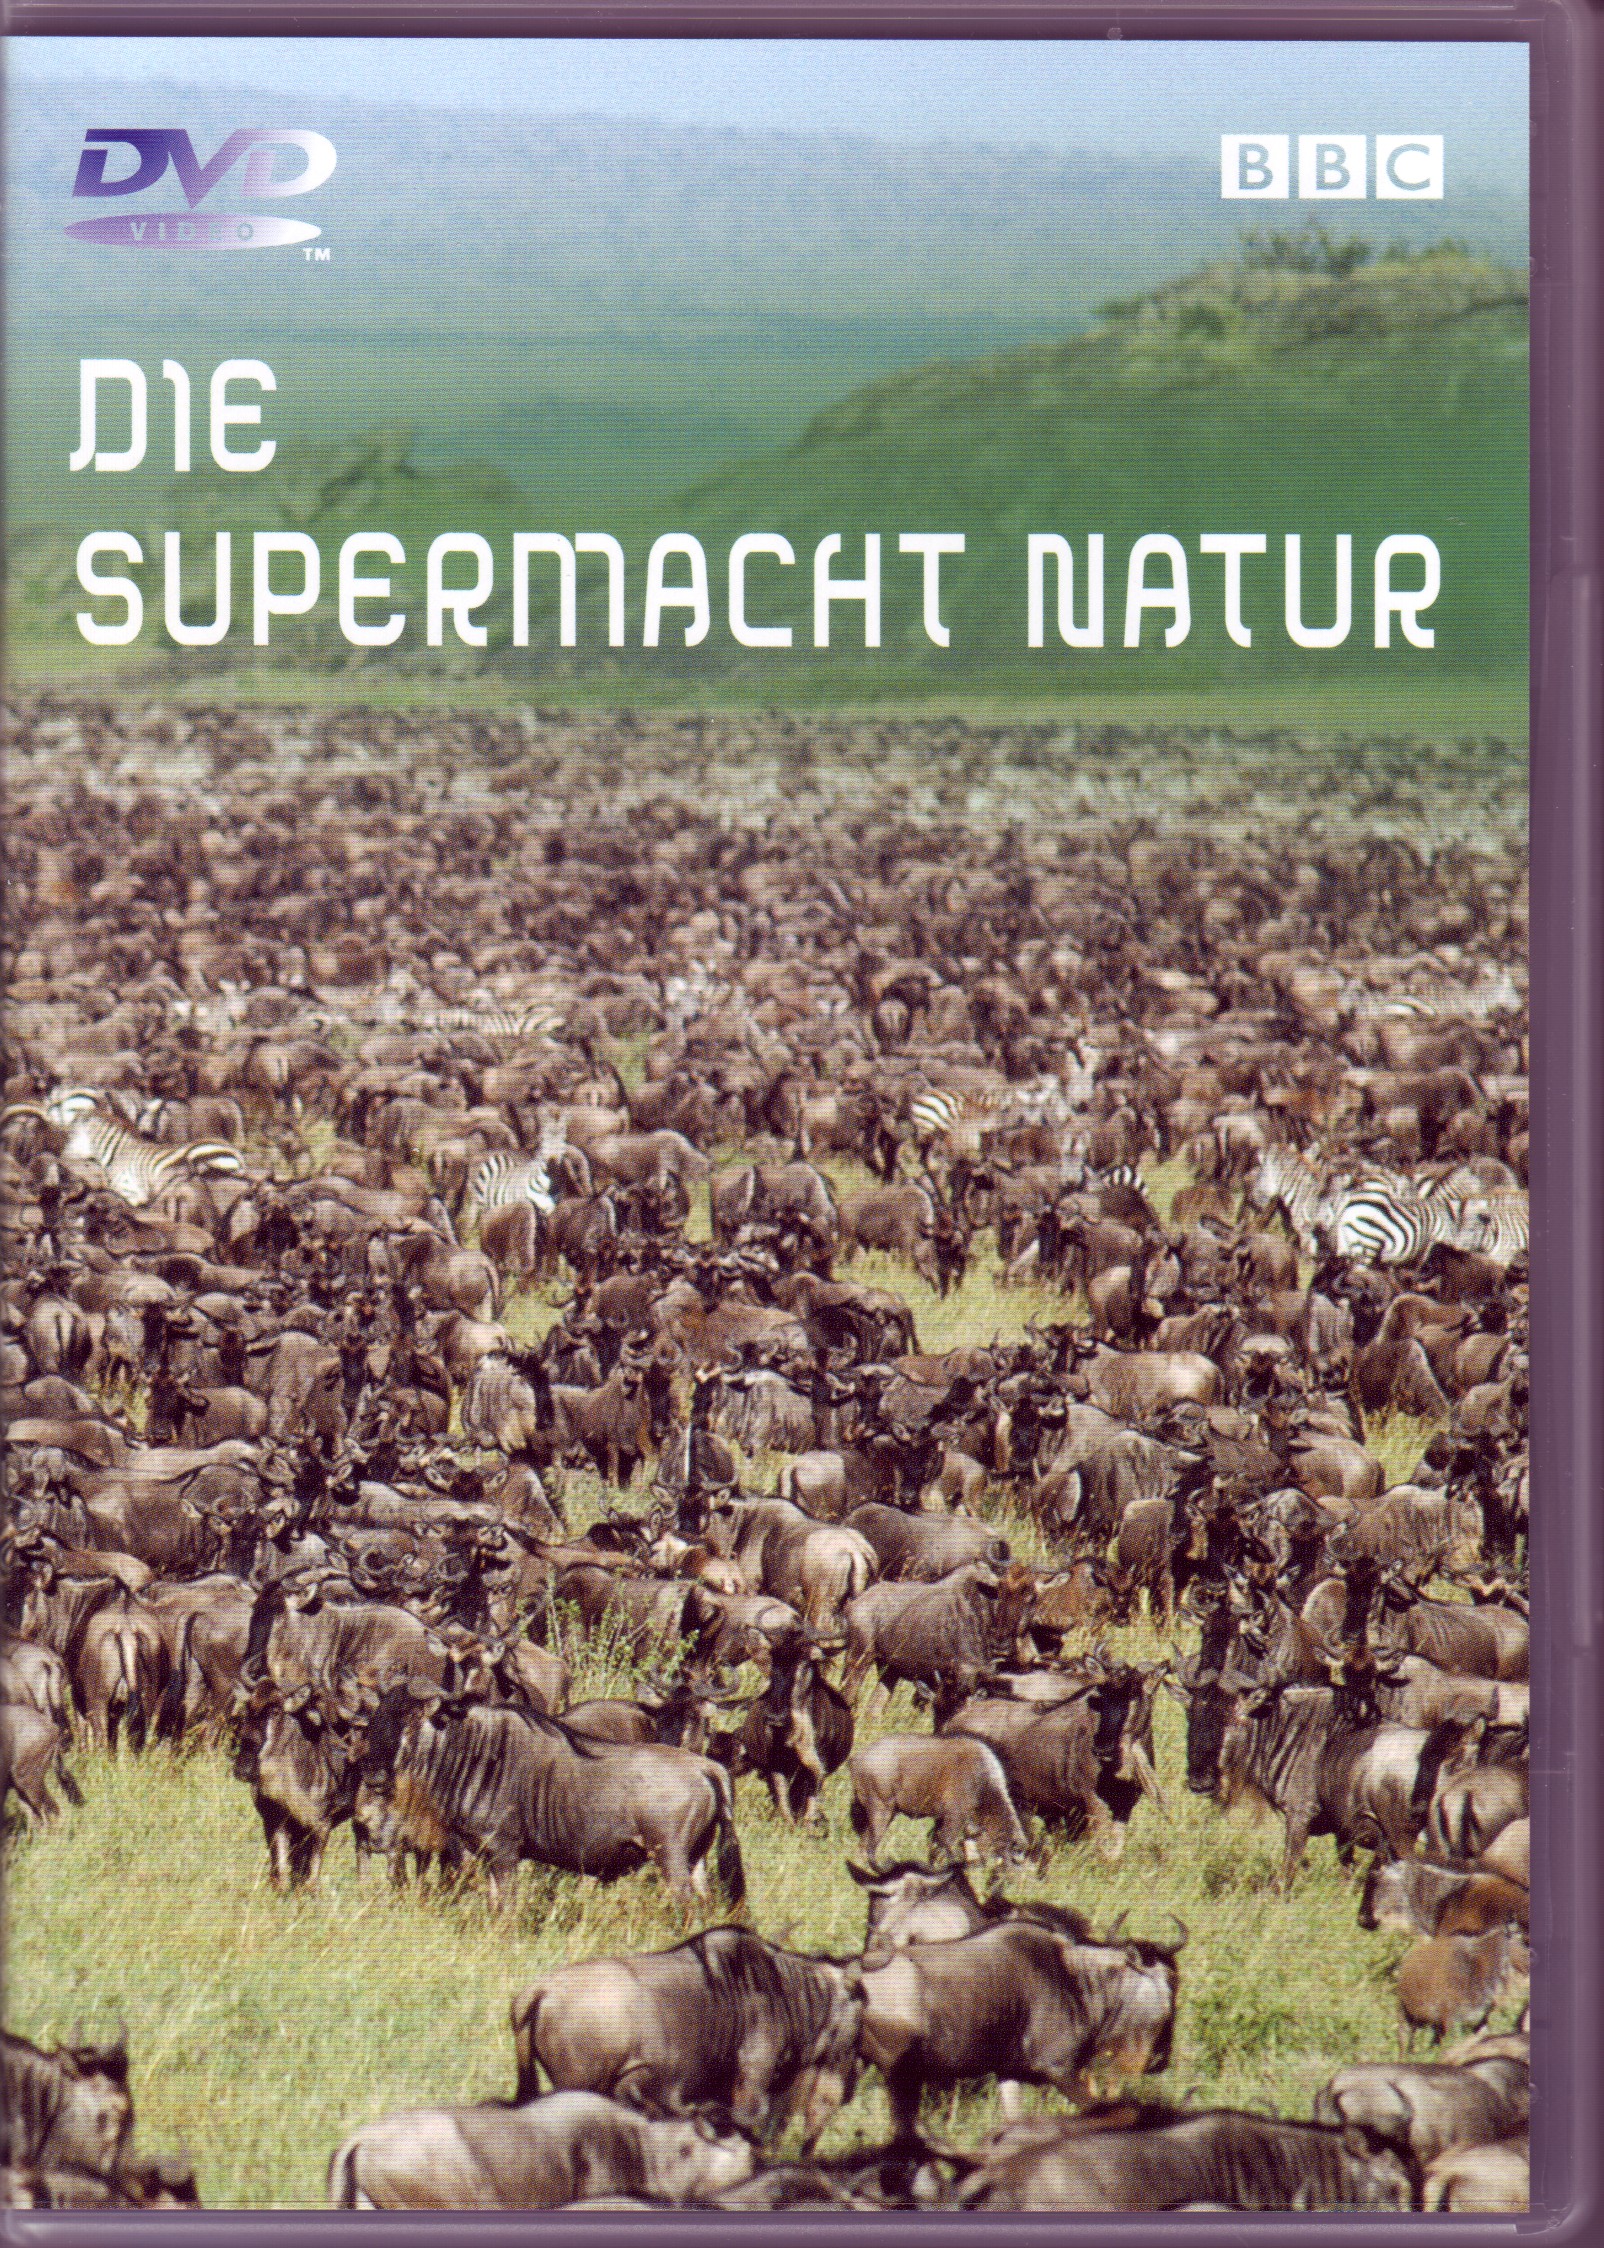 DIE SUPERMACHT NATUR DVD